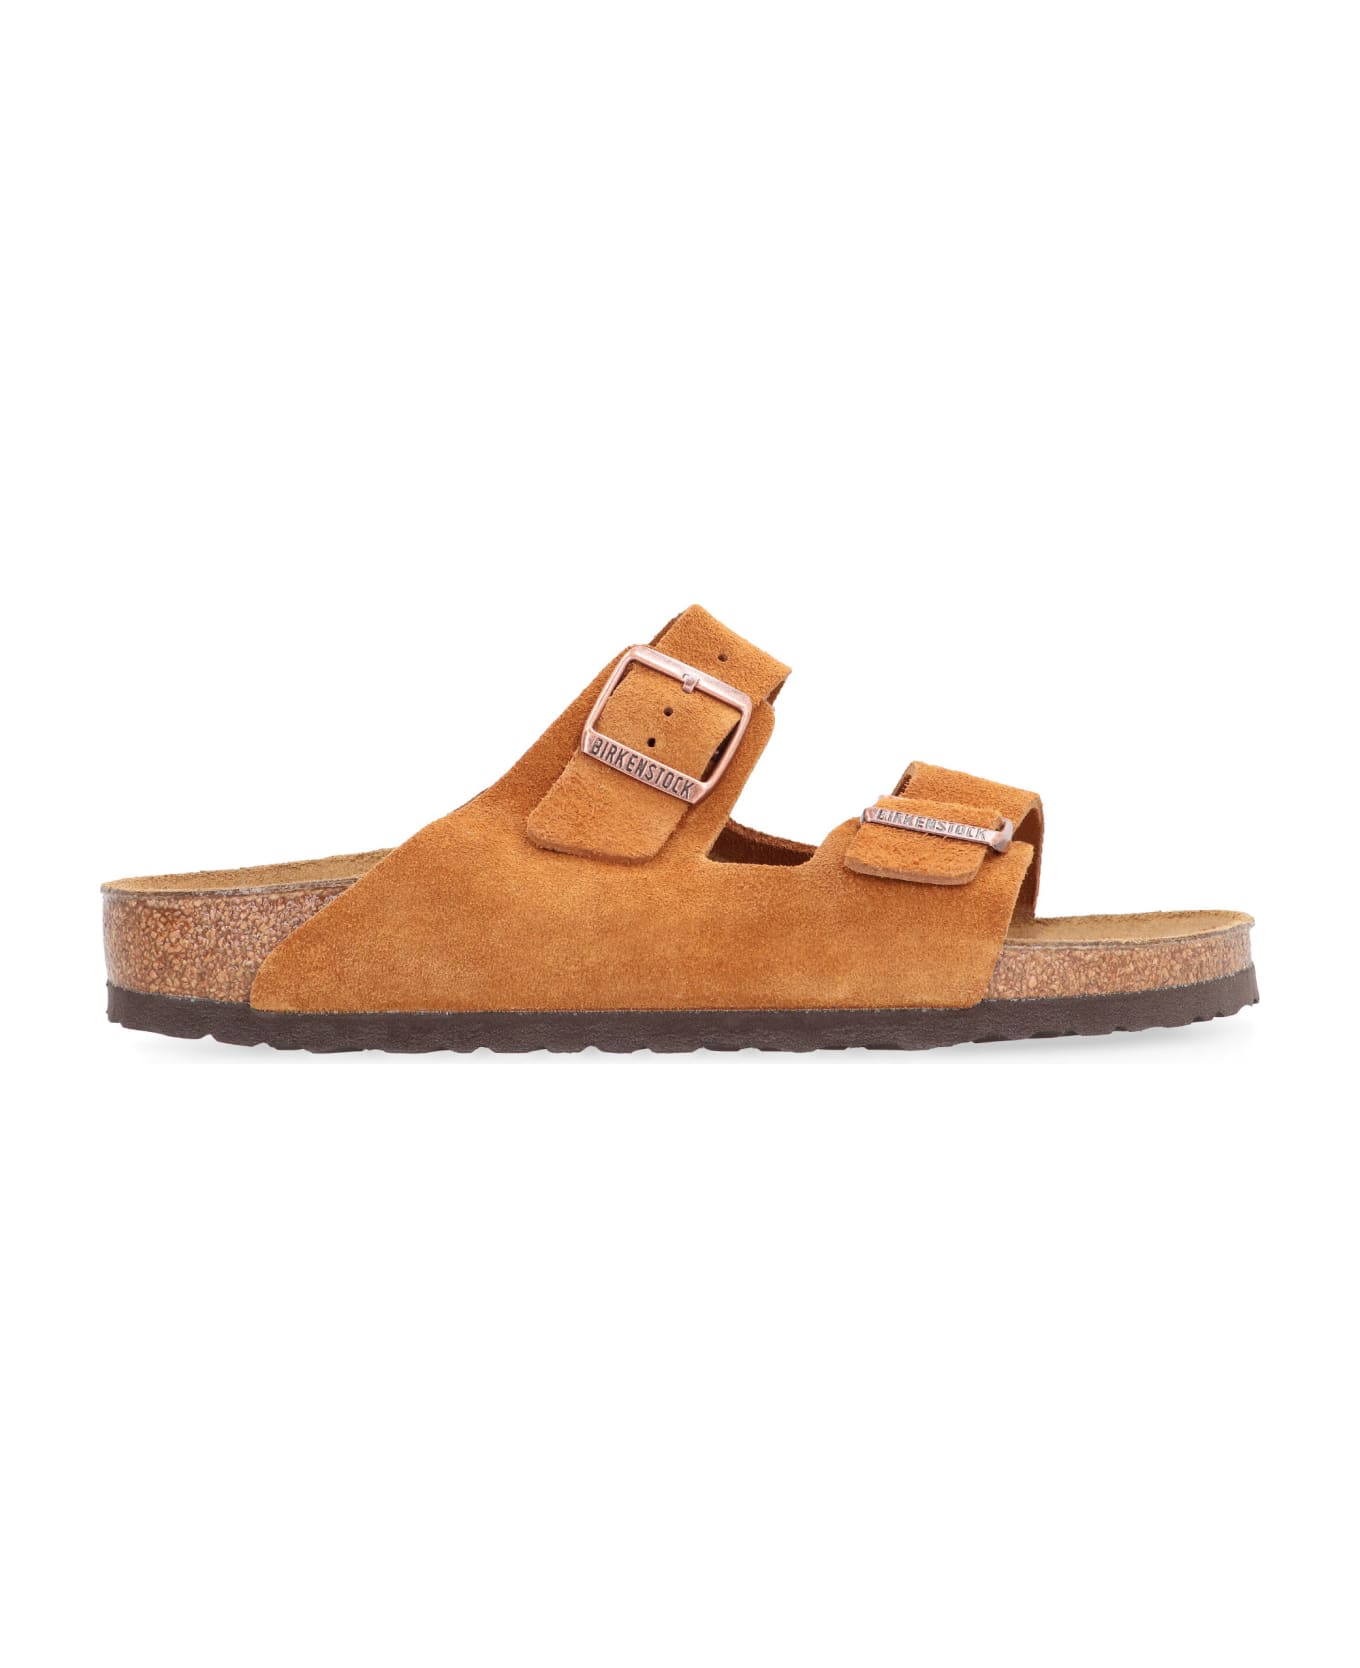 Birkenstock Arizona Sandals - brown